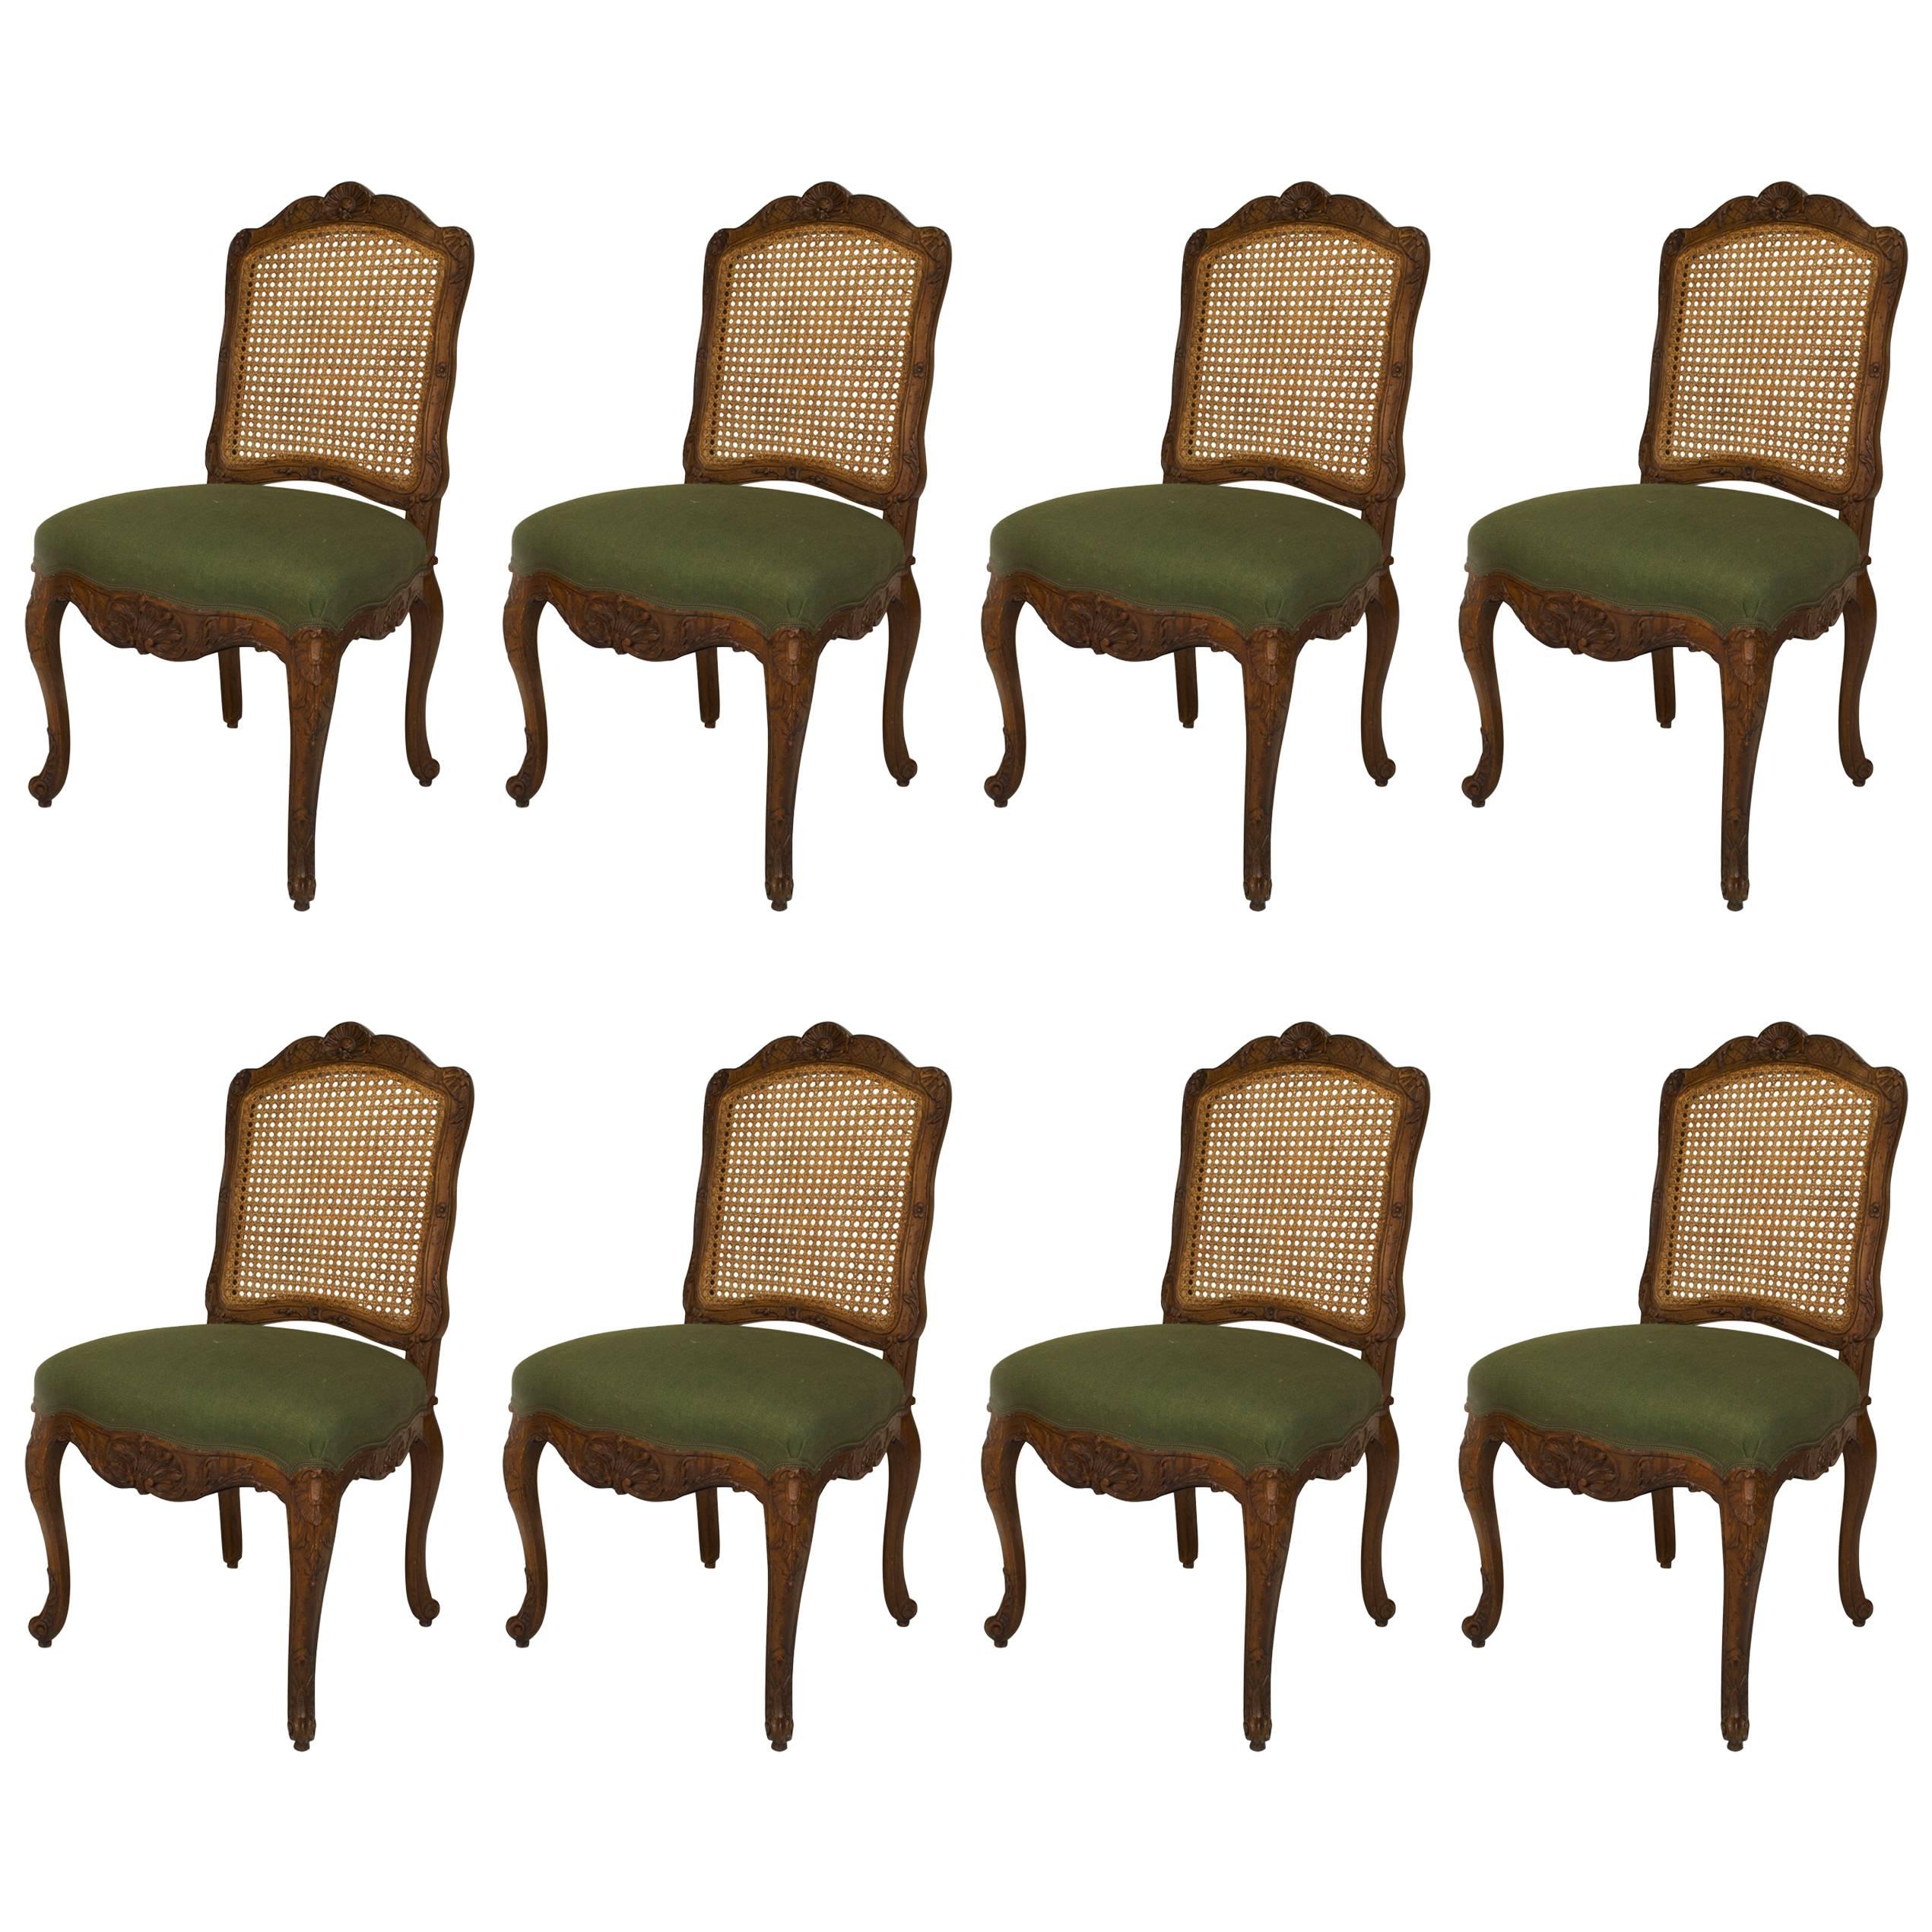 Ensemble de 8 chaises d'appoint vertes Louis XV provinciales françaises